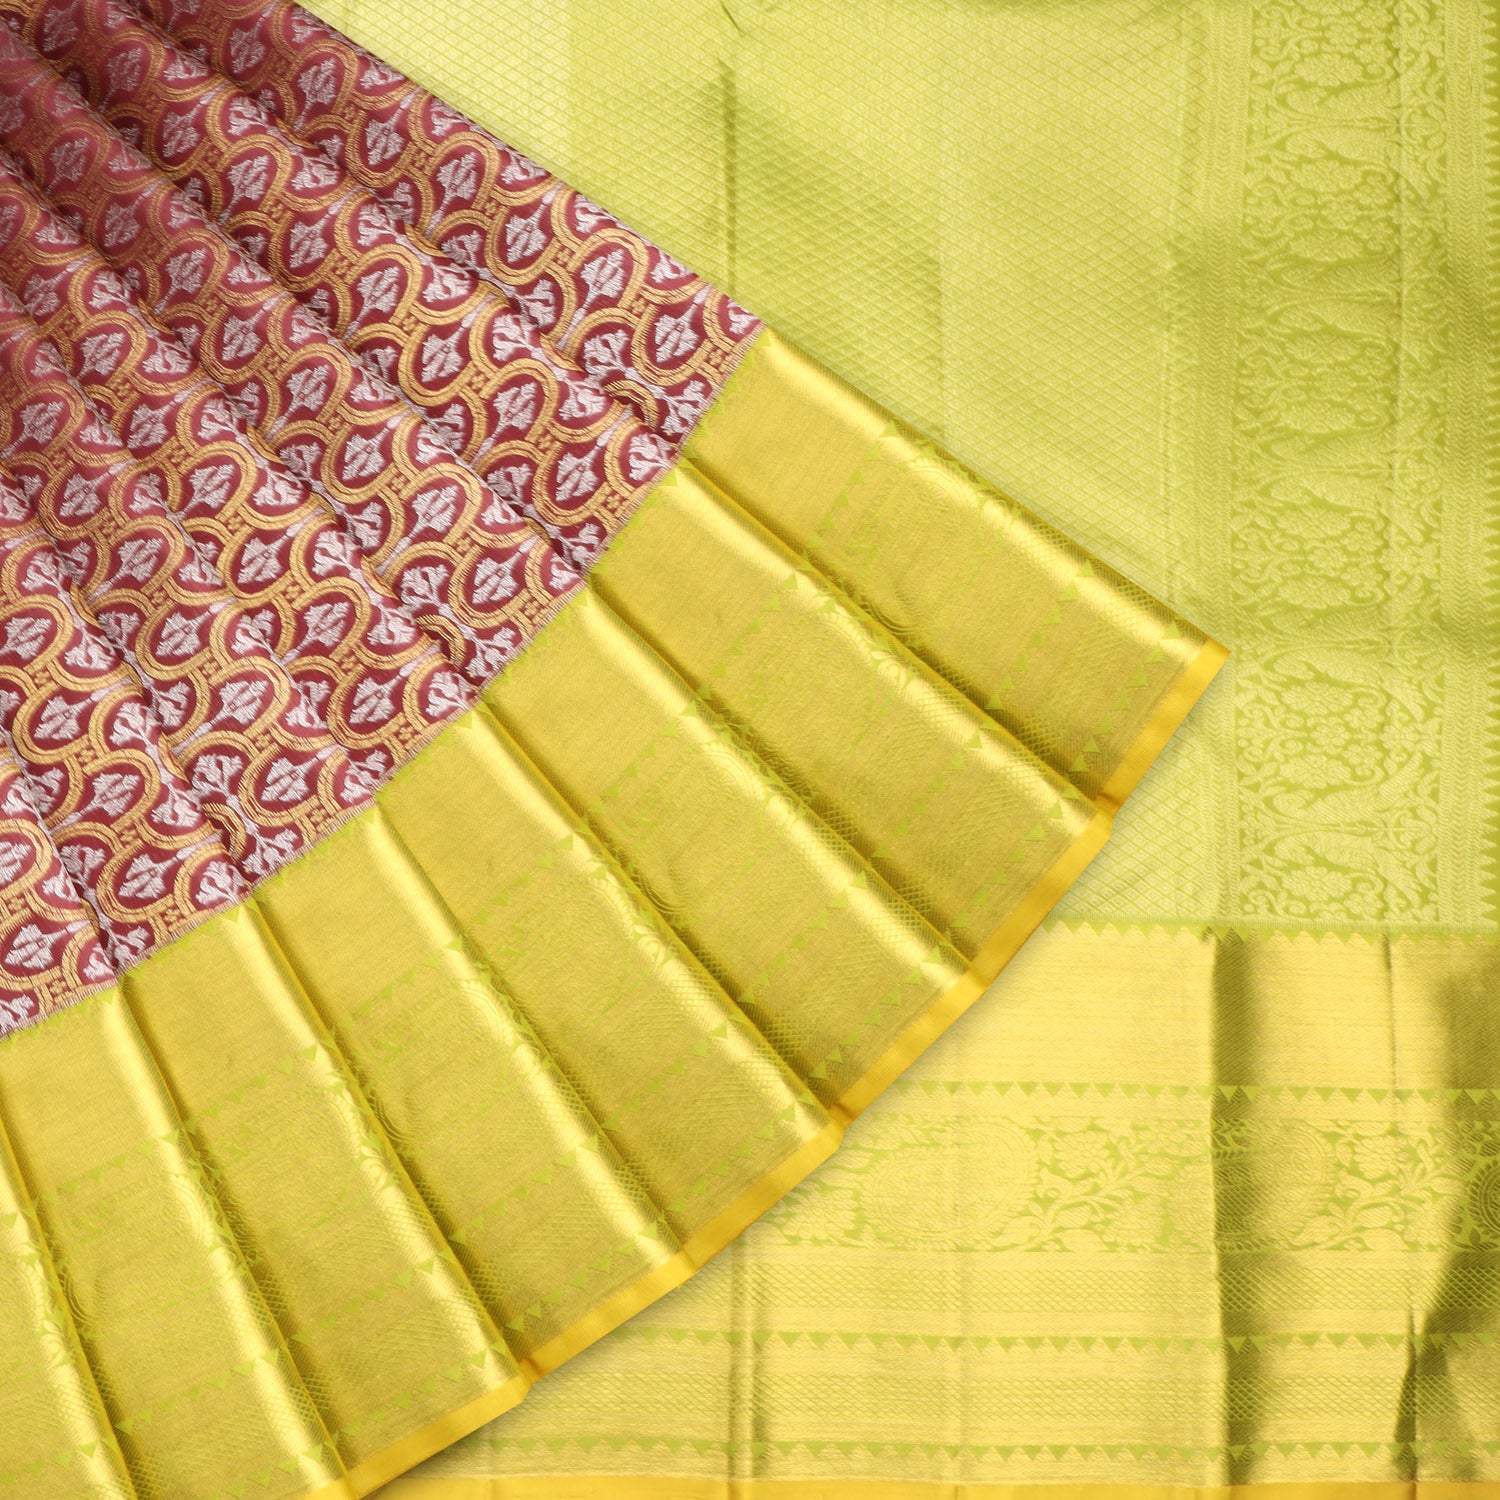 Brown Kanjivaram Silk Saree With Floral Motif Pattern - Singhania's